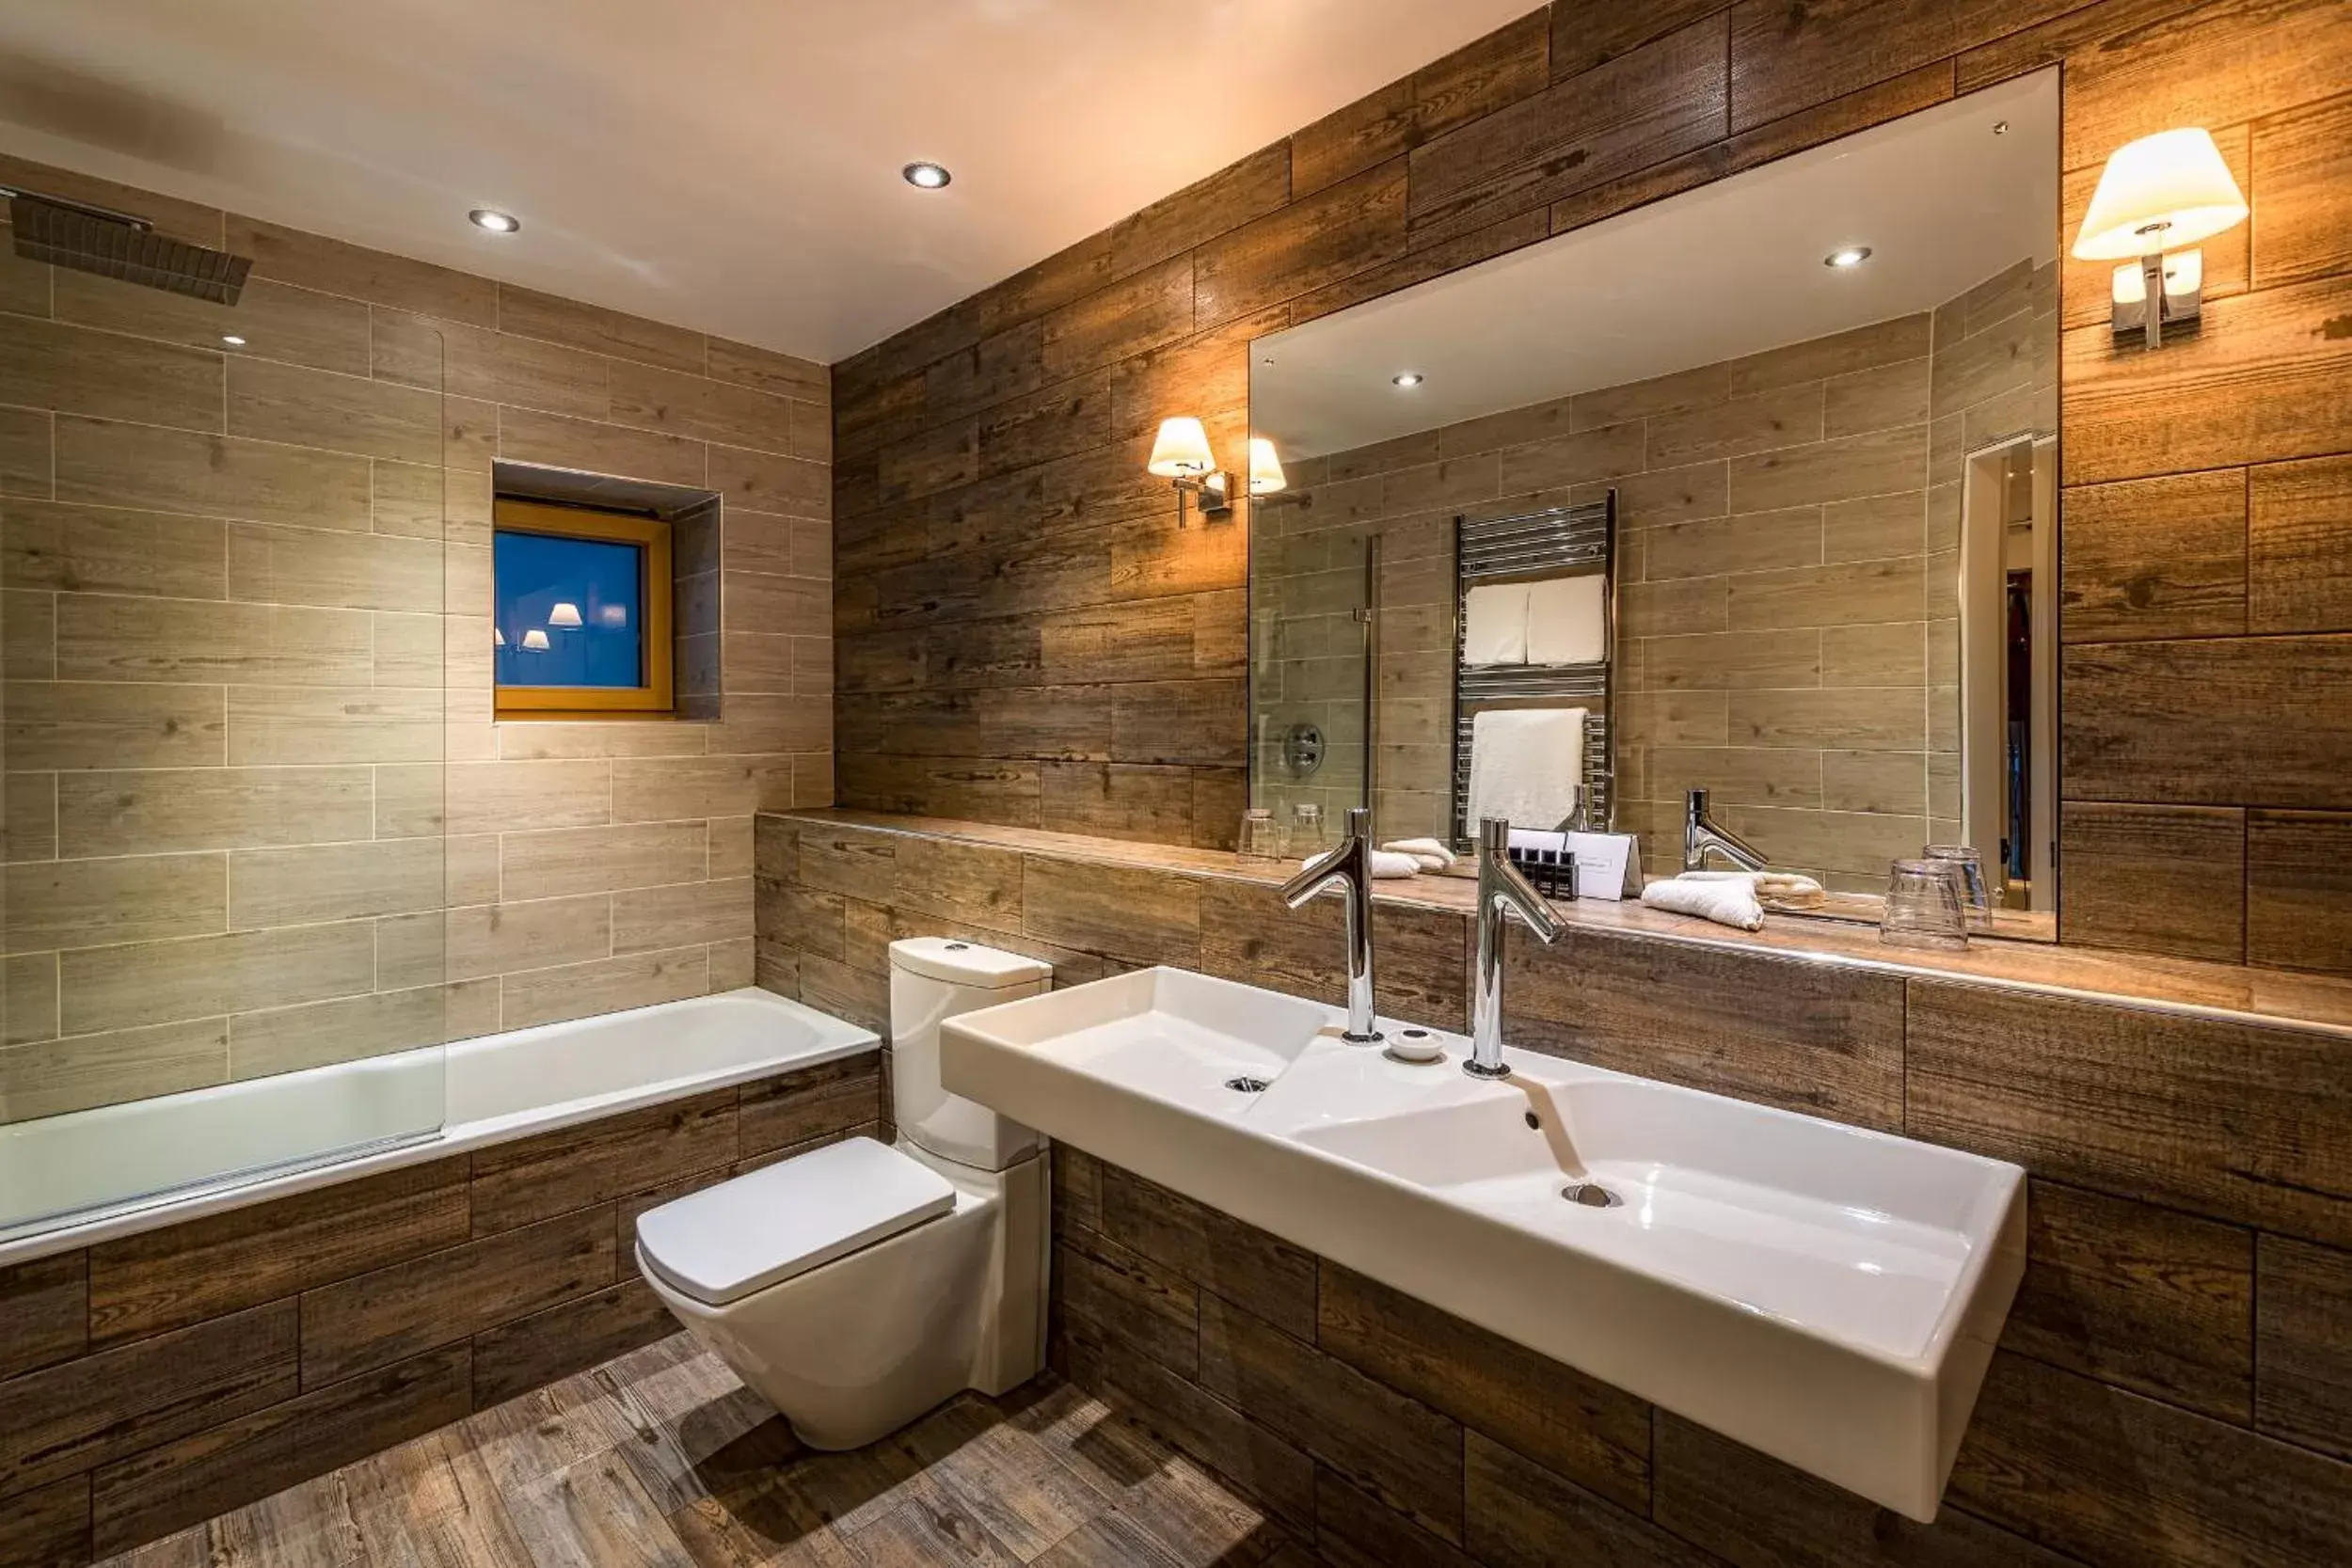 Toilet, Bathroom in Skeabost House Hotel